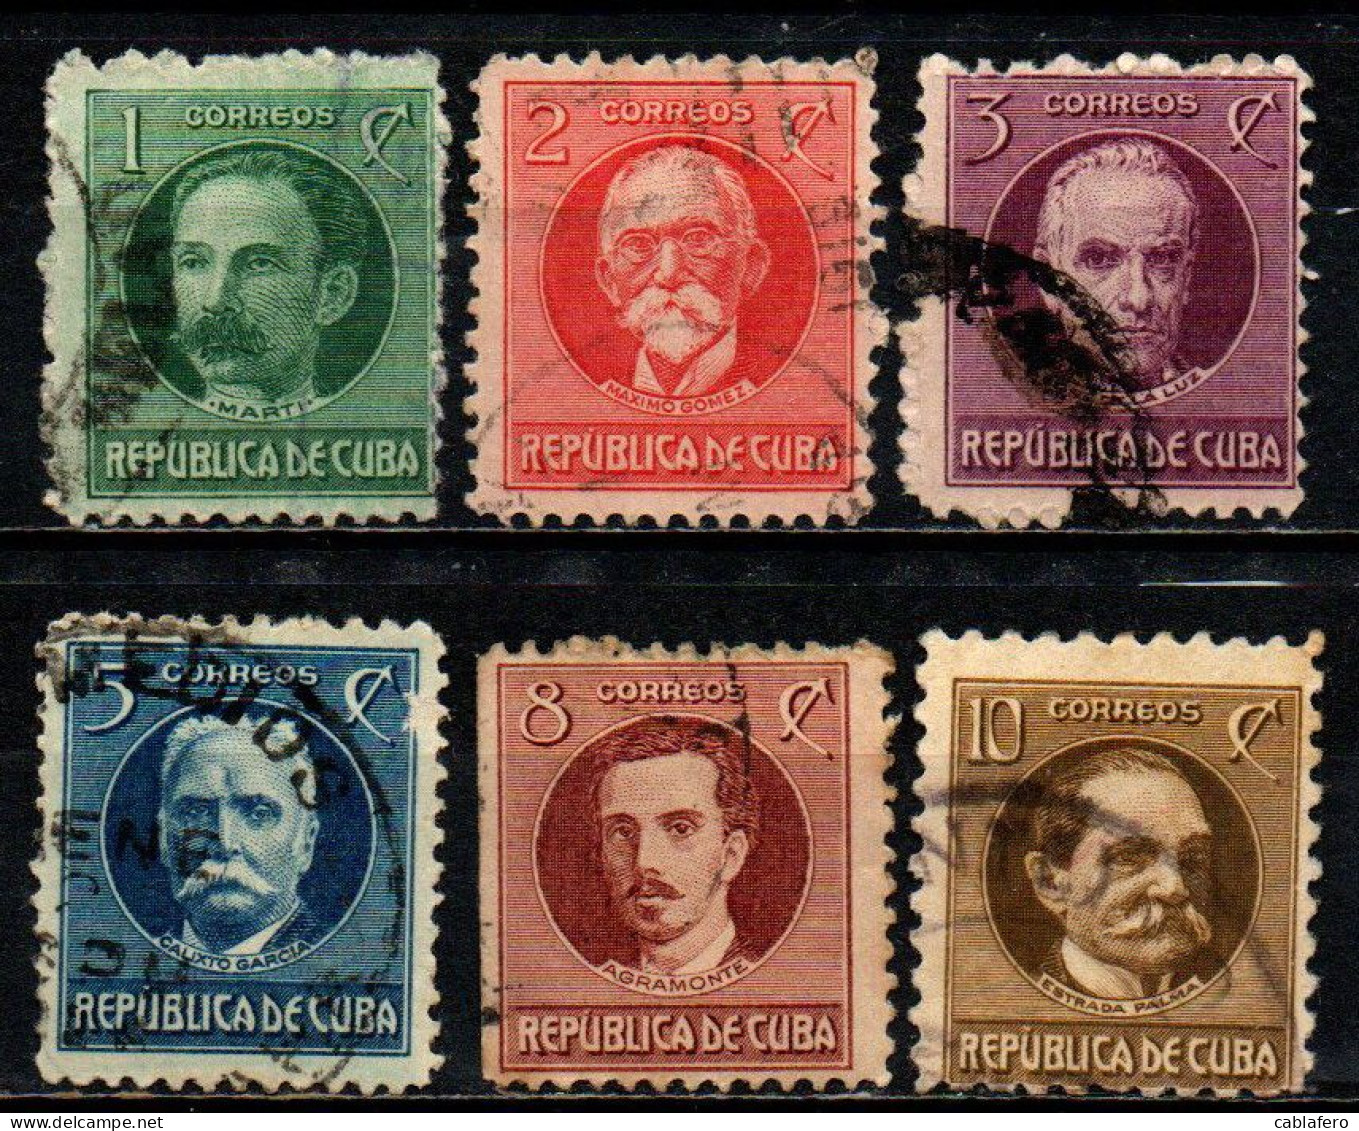 CUBA - 1917 - PERSONALITA' DEL SUDAMERICA: JOSE' MARTI, MAXIMO GOMEZ, JOSE' DE LA LUZ CABALLERO, CALIXTO GARCIA, IGNACIO - Usati